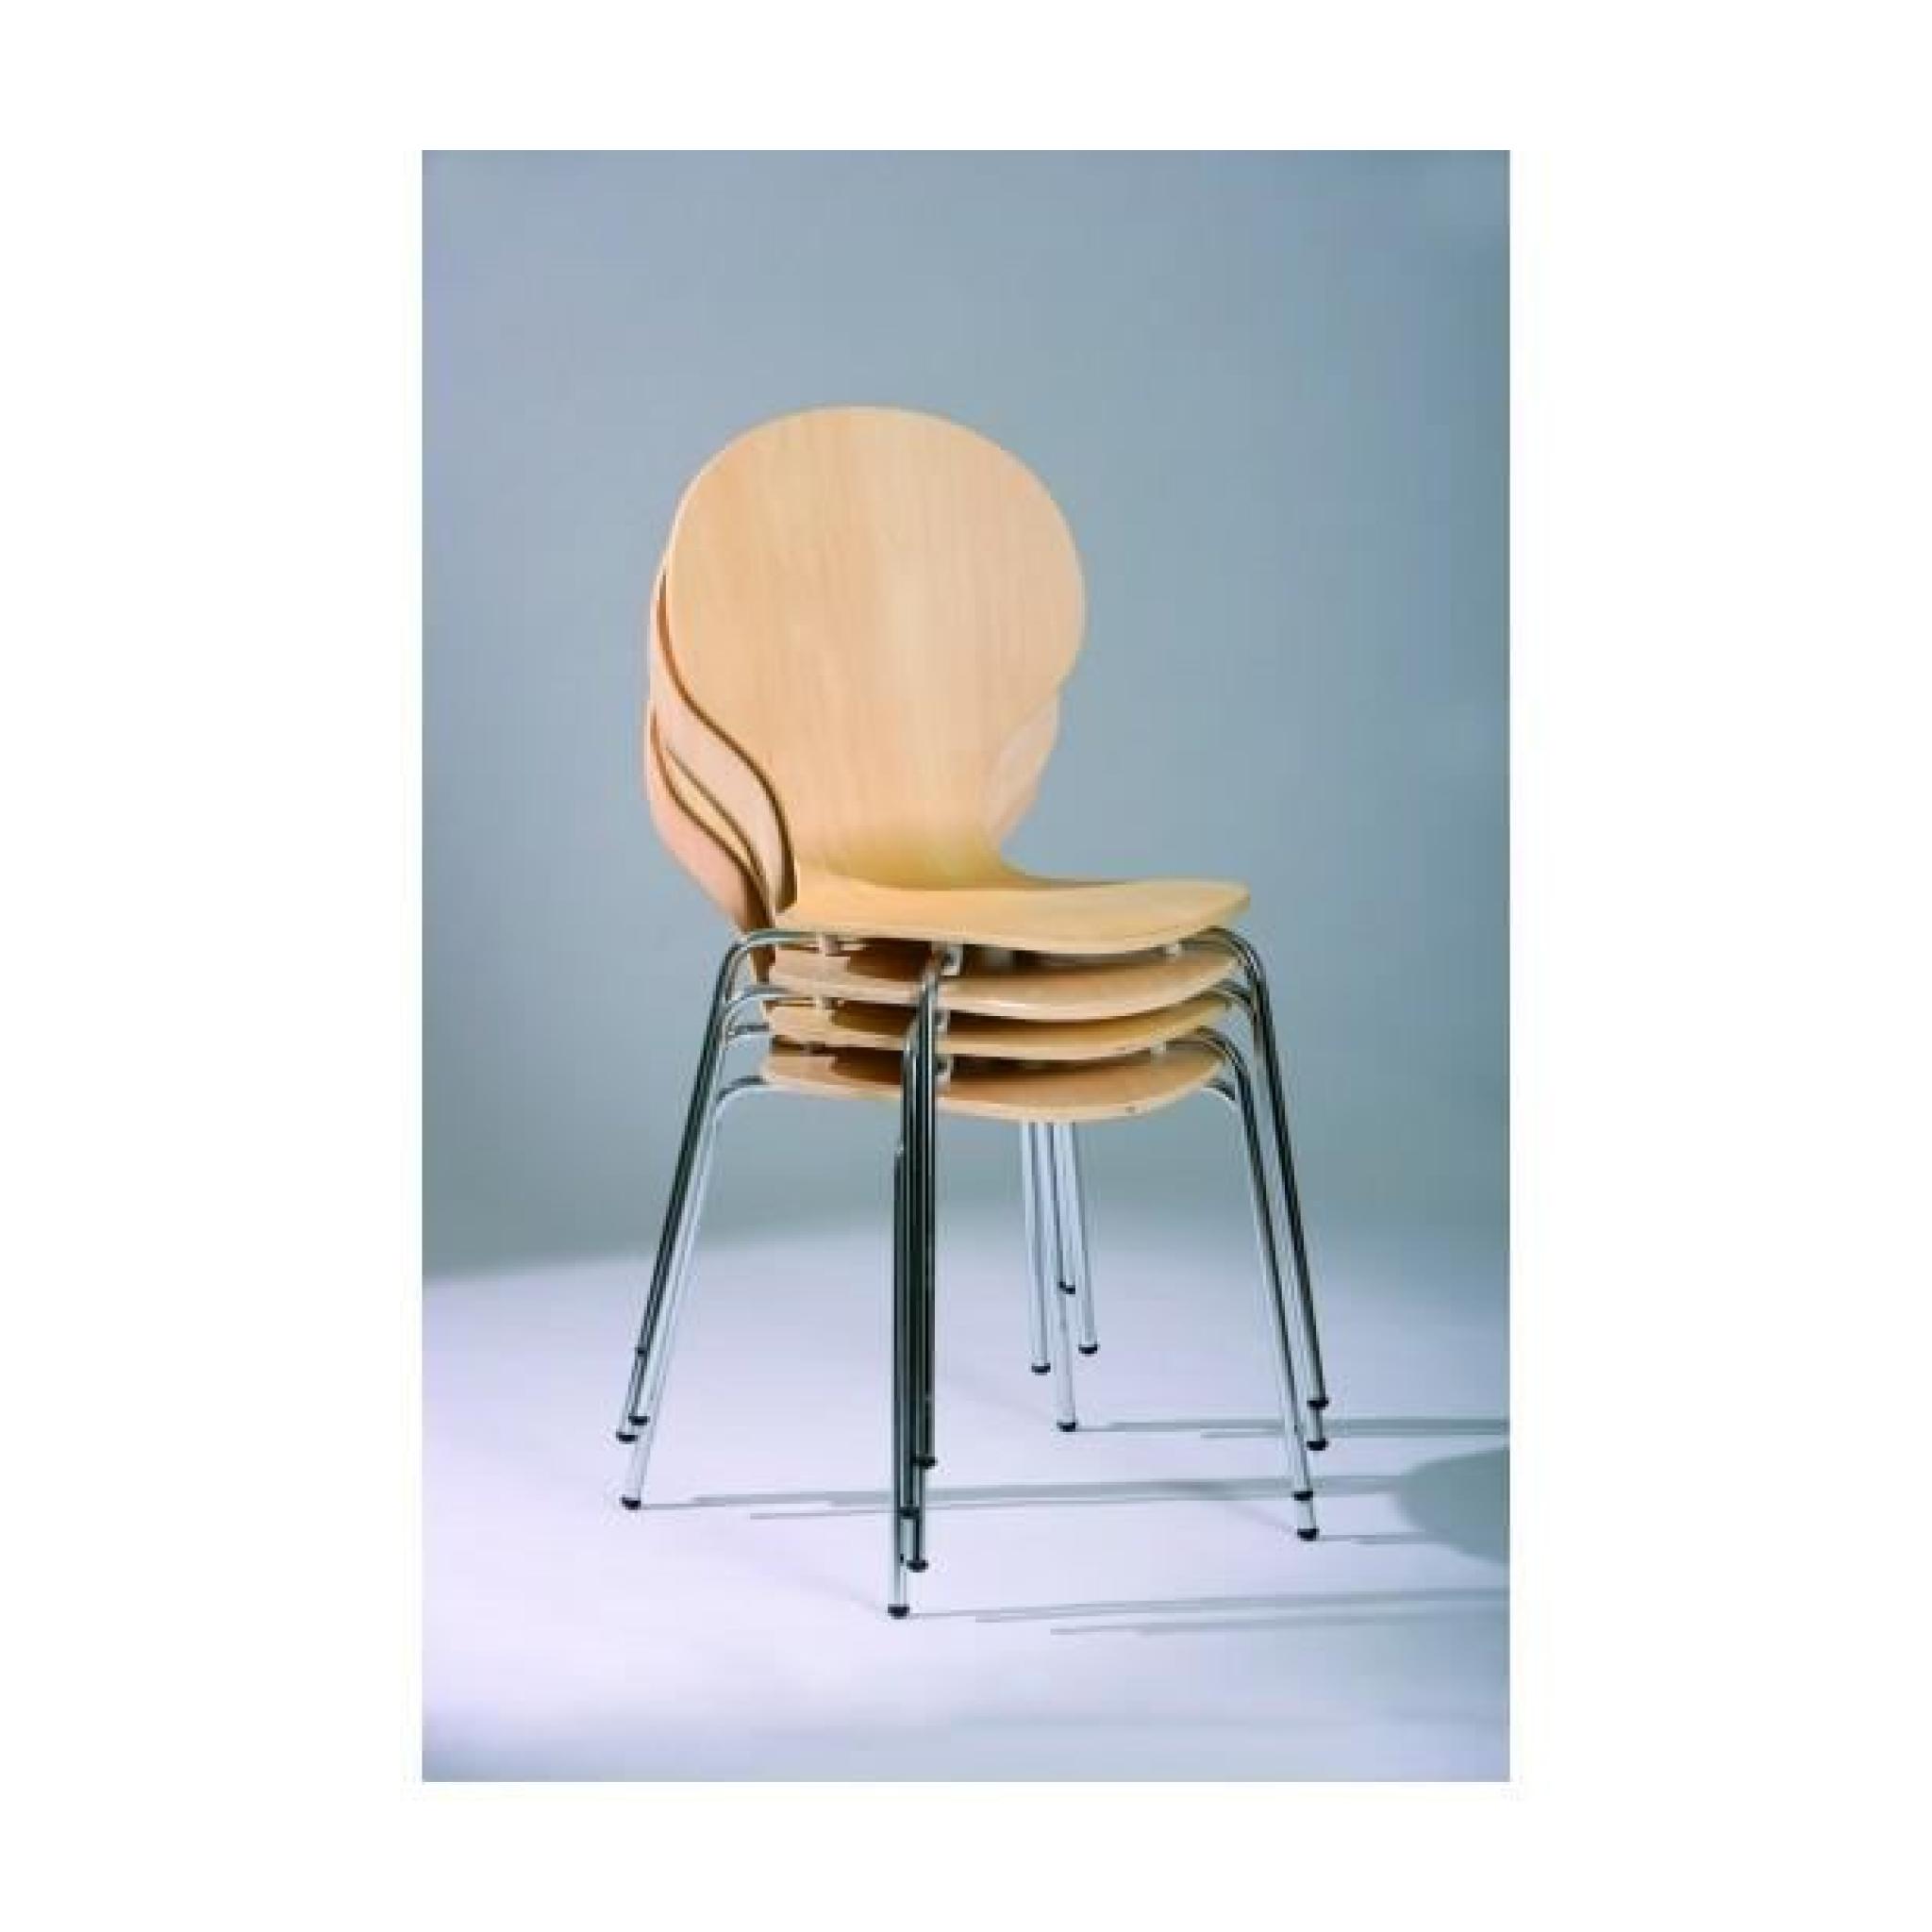 4 chaises bois laminé - teinte naturel - structure métal chromé  pas cher